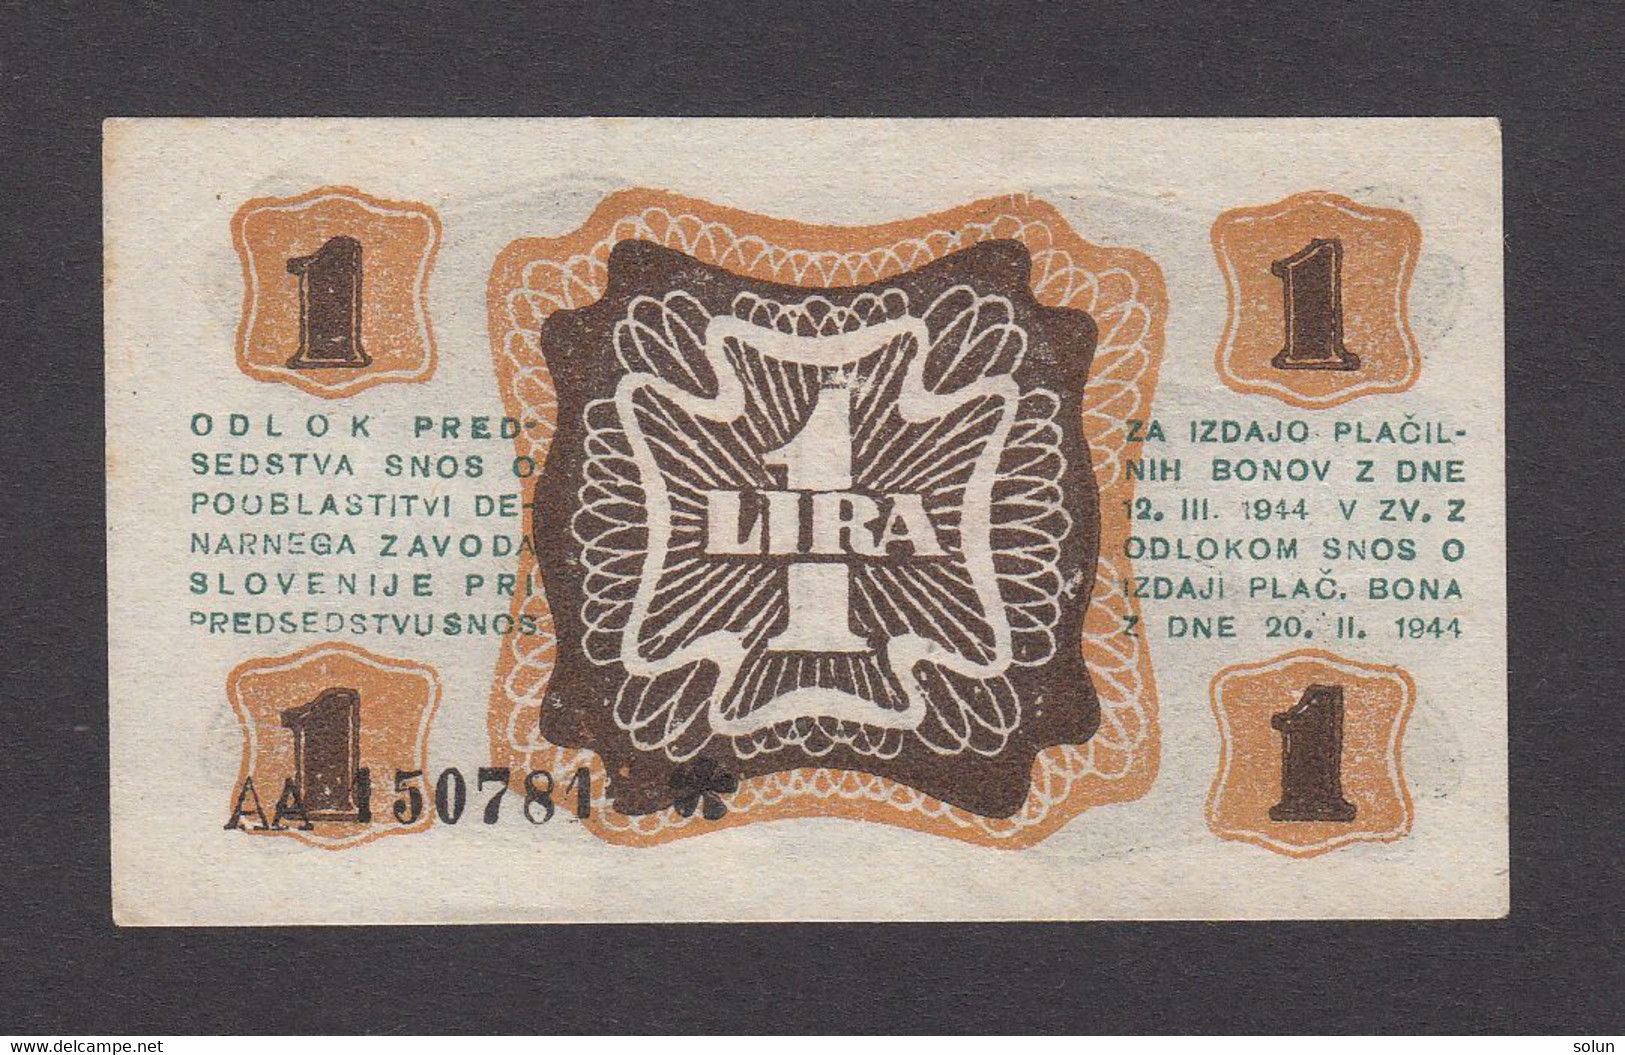 1 ENO LIRO LIRA  1944 PARTIZANSKI DENAR  DENARNI ZAVOD SLOVENIJE  WWII SLOVENIAN BANKNOTE - Slovénie